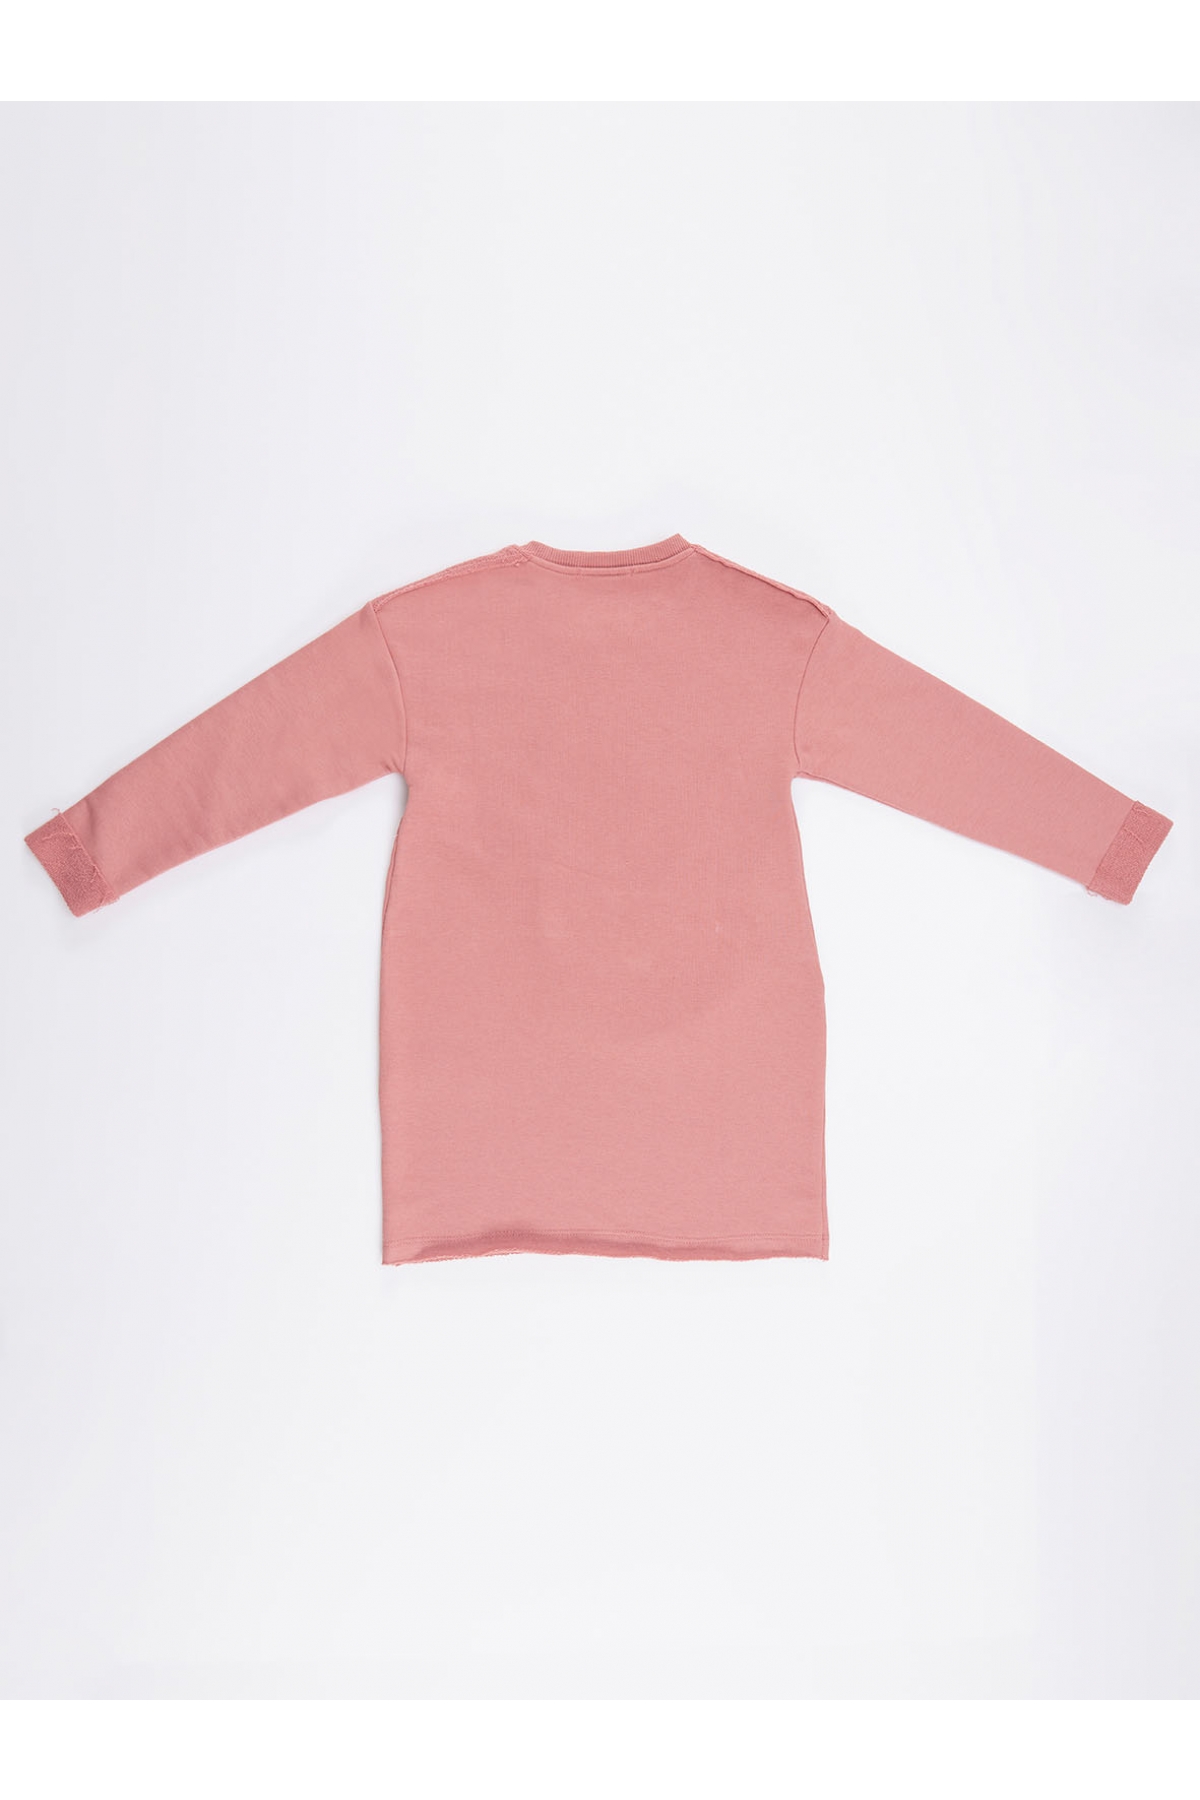 Pink 97                  EU discount 89% Kiabi jumper KIDS FASHION Jumpers & Sweatshirts Sequin 